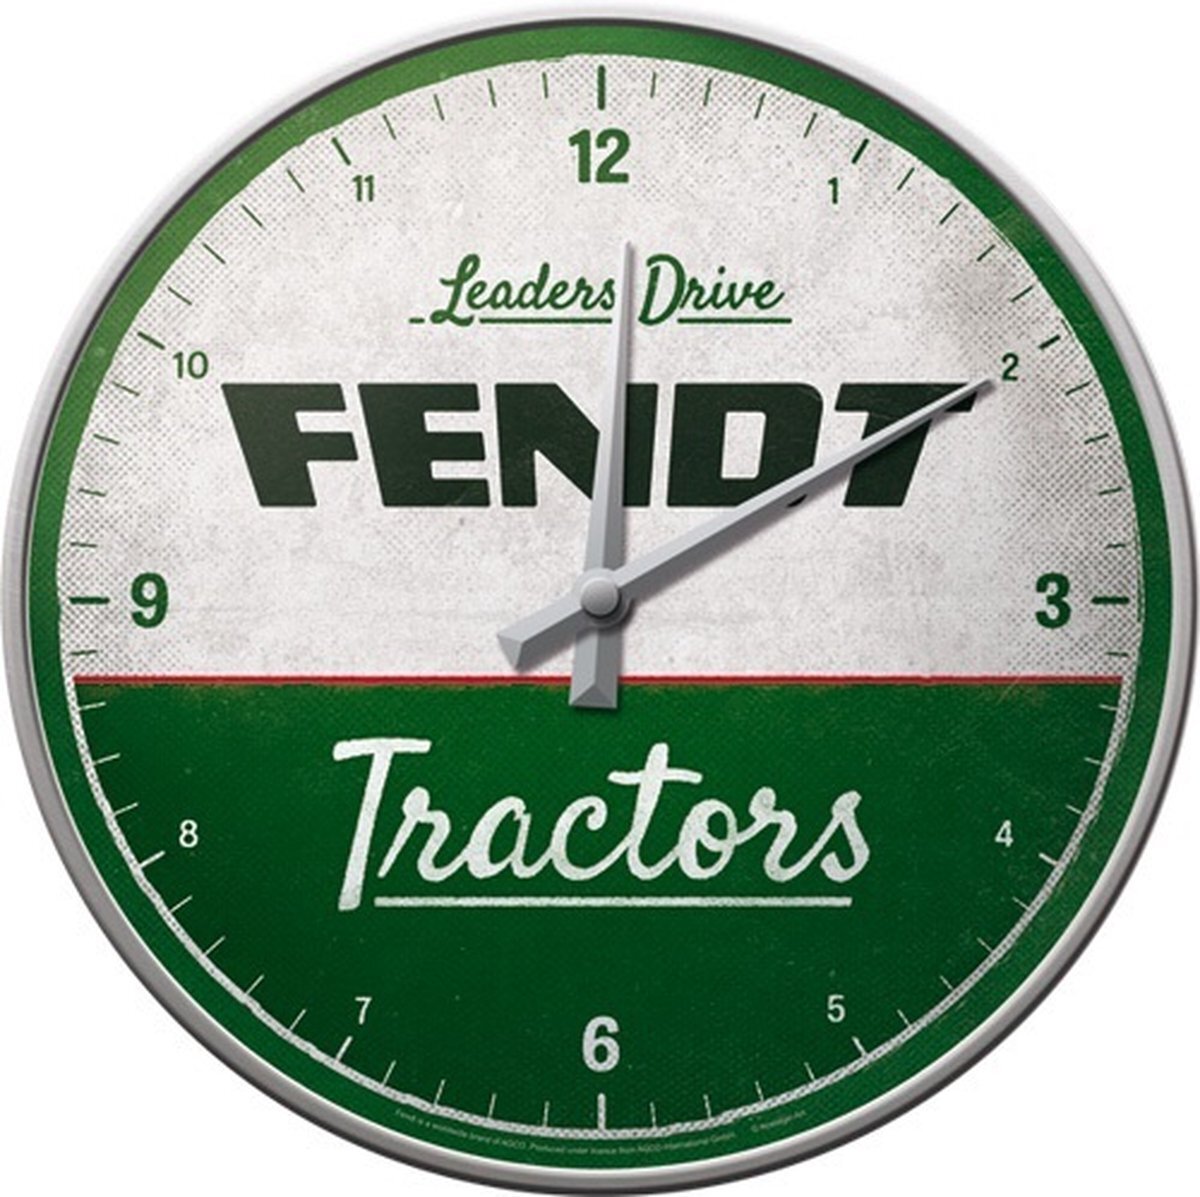 Nostalgic Art Retro wandklok, Fendt – Tractors – Geschenkidee voor tractorfans, Grote keukenklok, Deco vintage design, Ø 31 cm